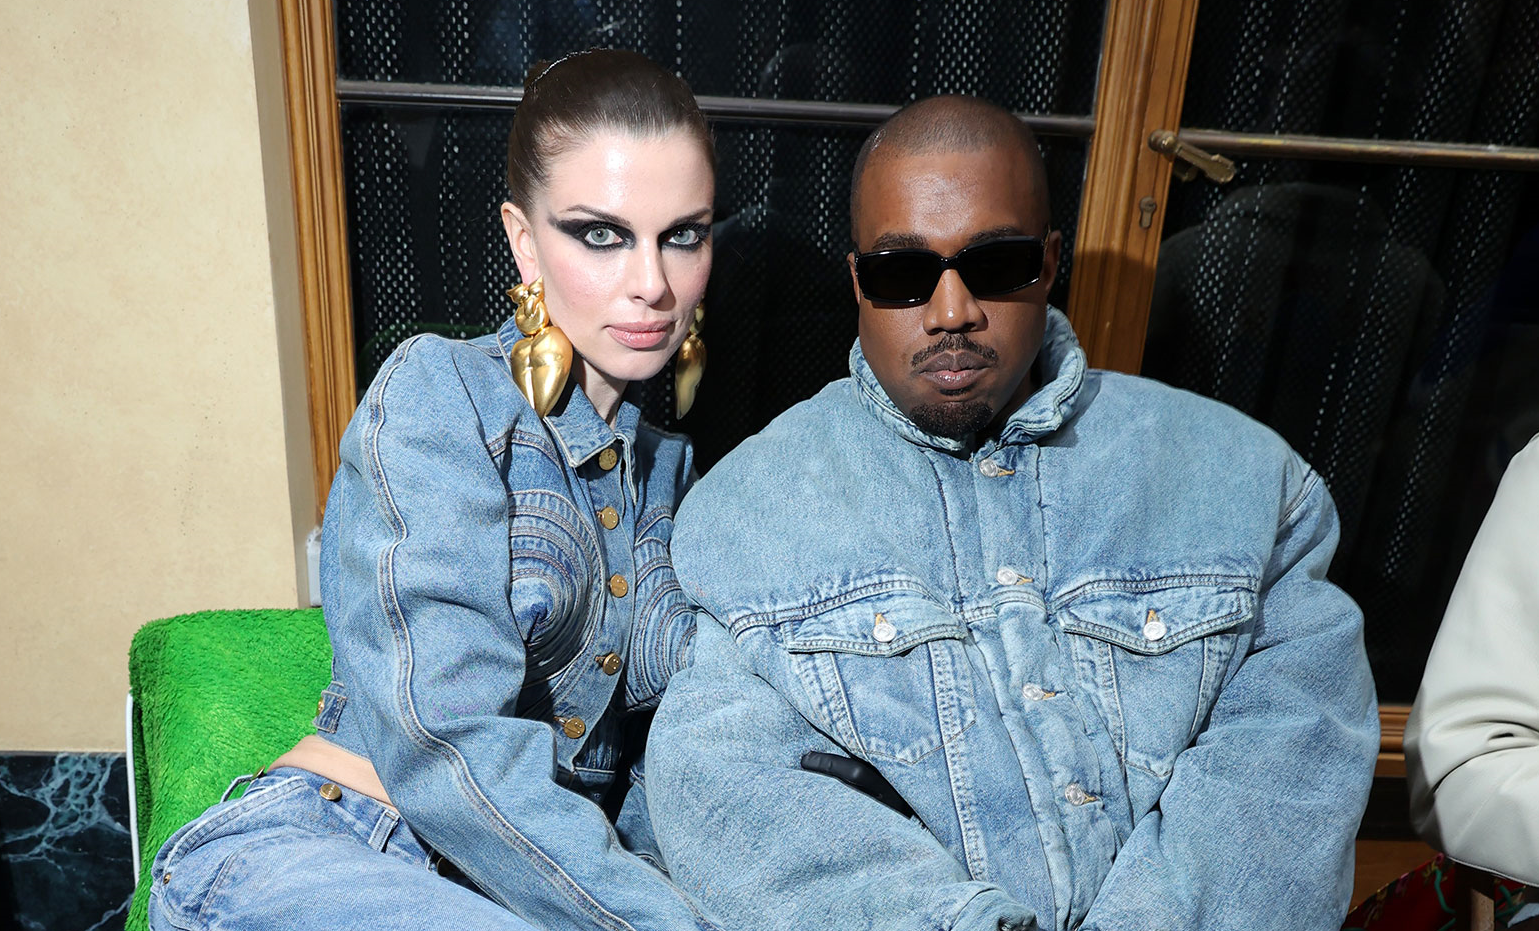 แจ็คเก็ตยีนส์ Balenciaga ที่ใส่ออกงานโดย Kanye West ถูกซื้อผ่านทางออนไลน์หมดแทบจะในทันที